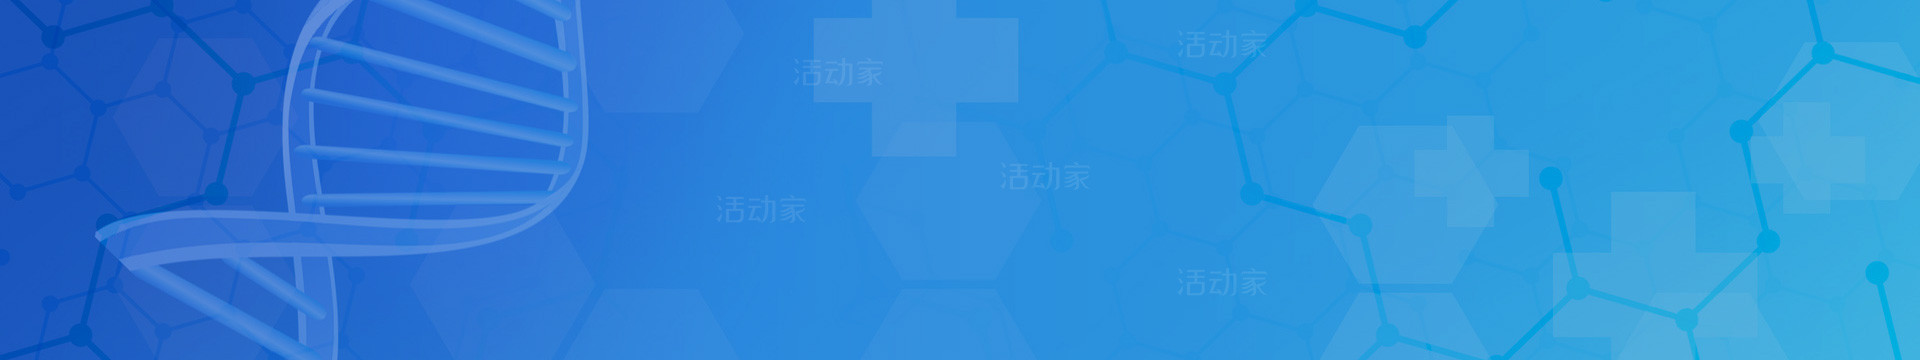 2020中国精准医学大会暨中国精准医疗产业博览会